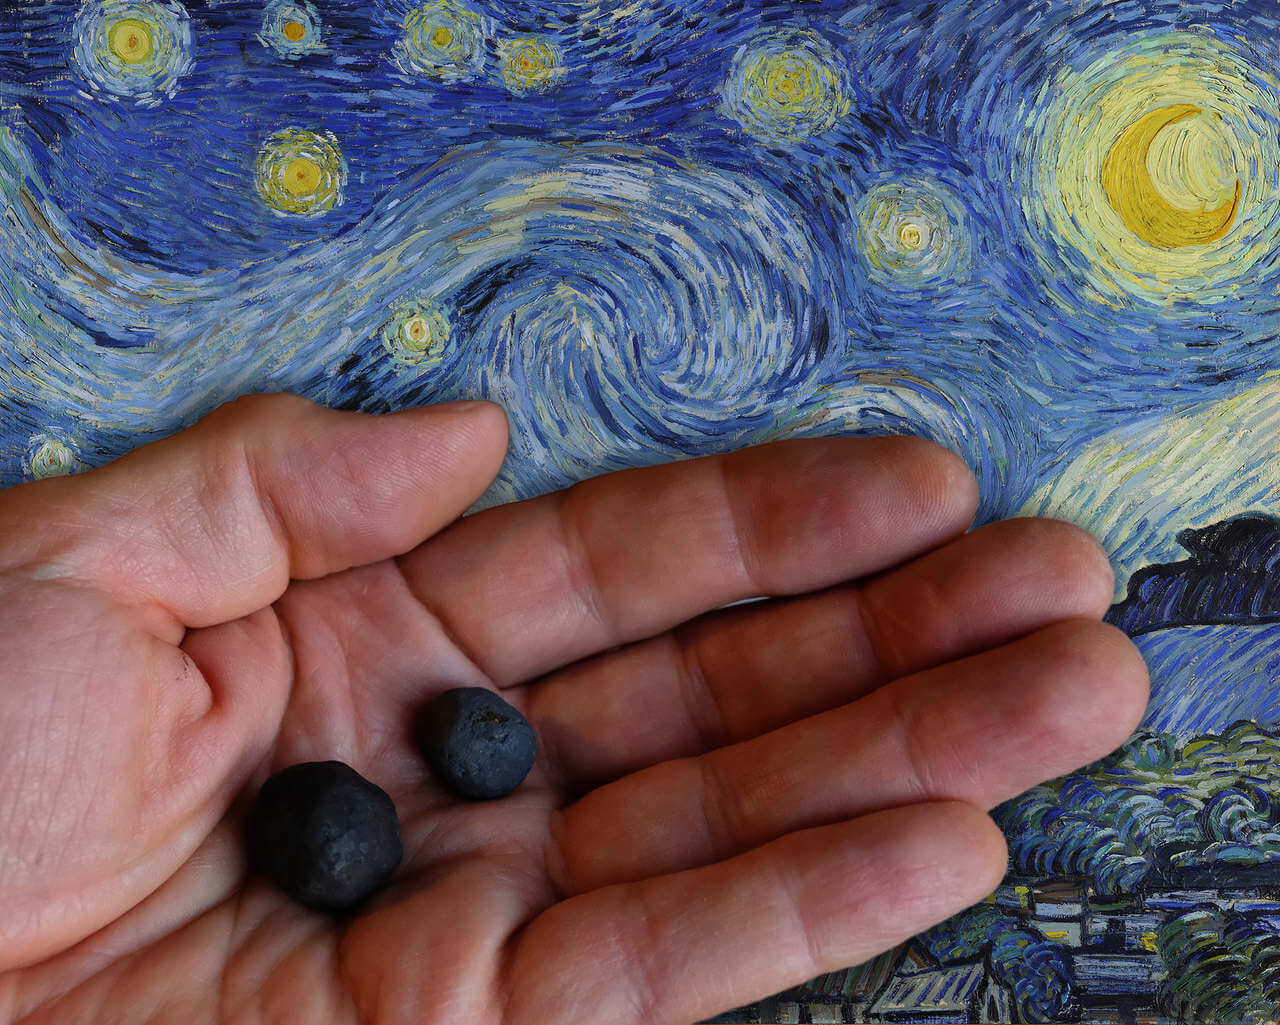 Meteoryty, które spadły z nieba na Paruszowiec na tle obrazu „Nieba” Vincenta van Gogha